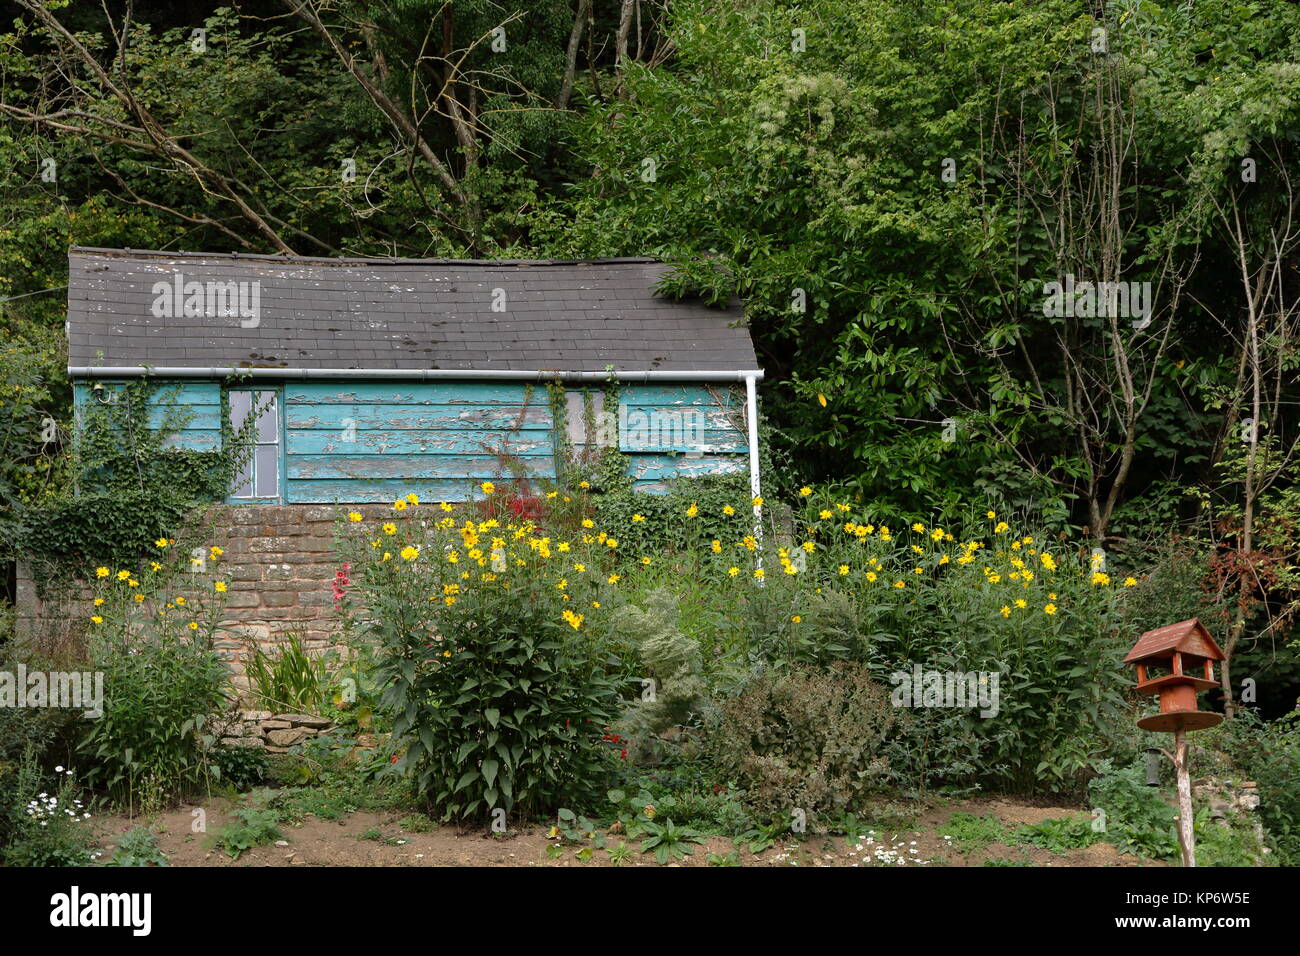 Blau lackiert Garten in Wäldern mit nach Hause bringen - Vogel Tabelle und gelben Gänseblümchen gemacht. Welsh Bicknor, Wales, UK. September 2017. Stockfoto